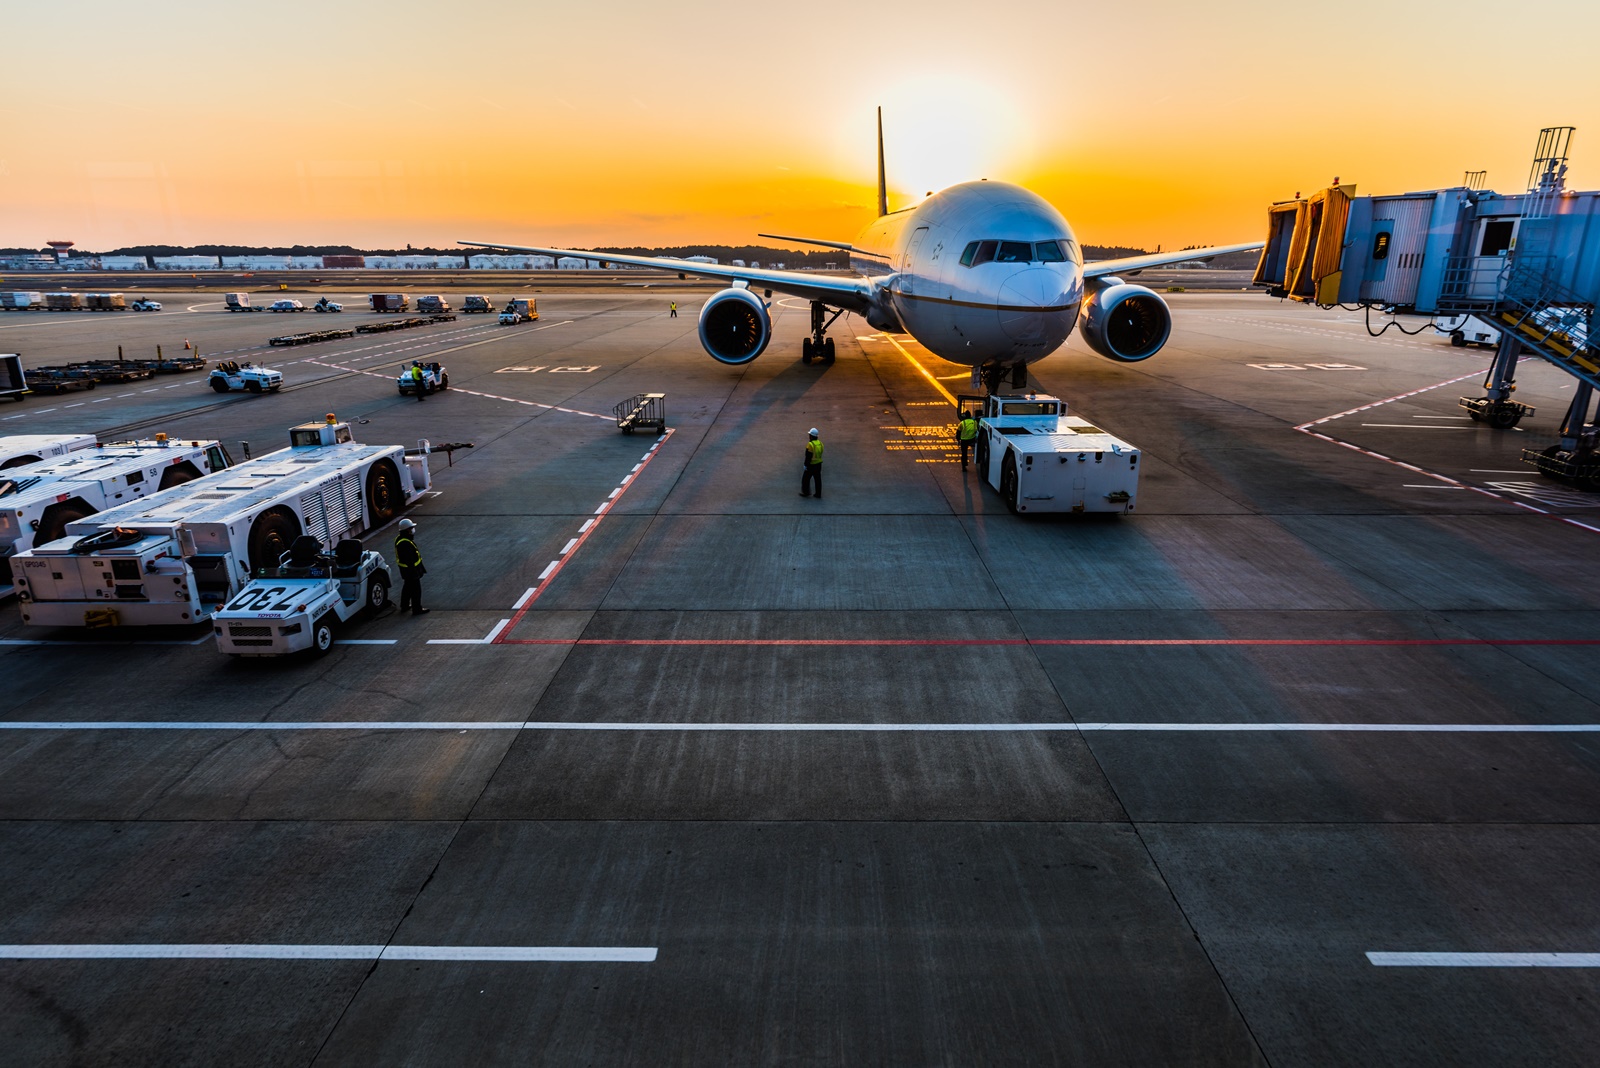 Υπάλληλοι αεροδρομίου πετούσαν αποσκευές: Το εξοργιστικό βίντεο και οι απολύσεις